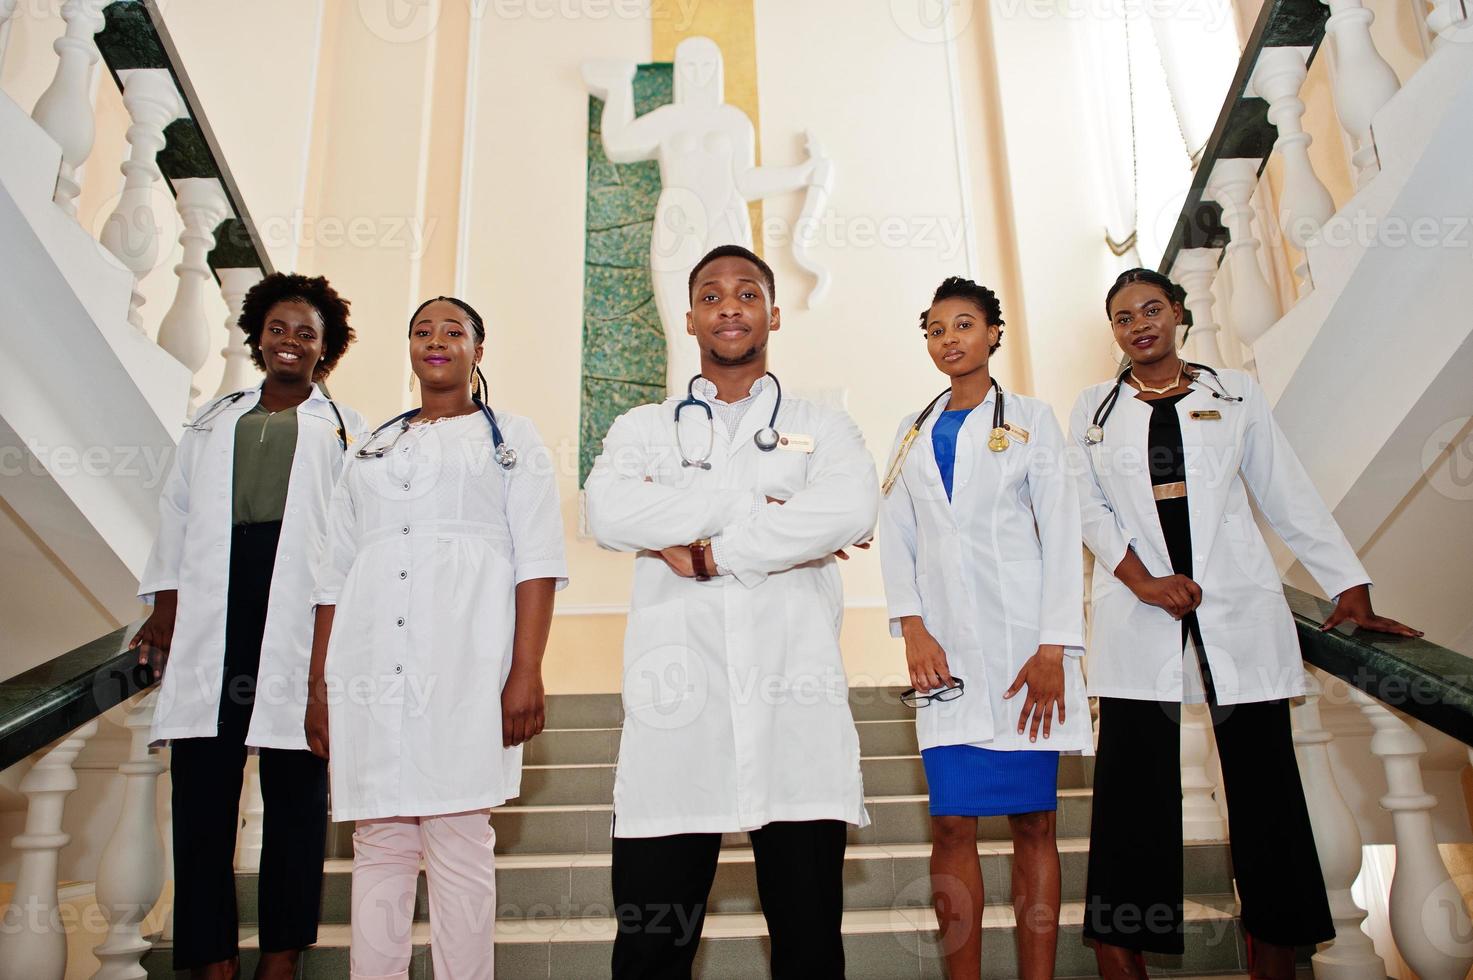 groep afrikaanse artsenstudenten binnen de medische universiteit. foto